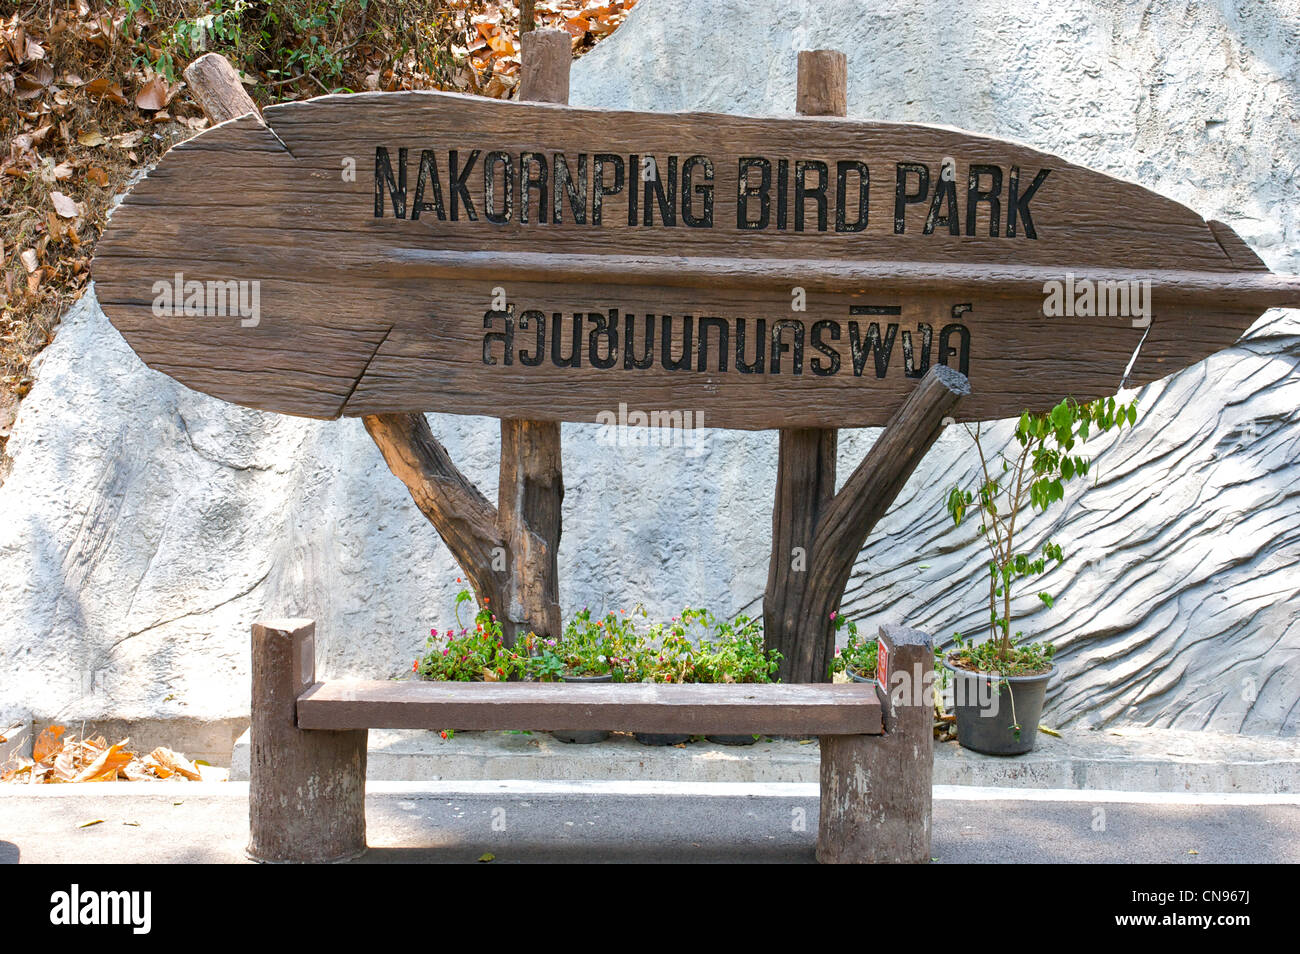 Parc d'oiseaux nakornping, panneau d'oiseaux, département de parc d'oiseaux, zoo de Chiang Mai, Thaialnd Banque D'Images